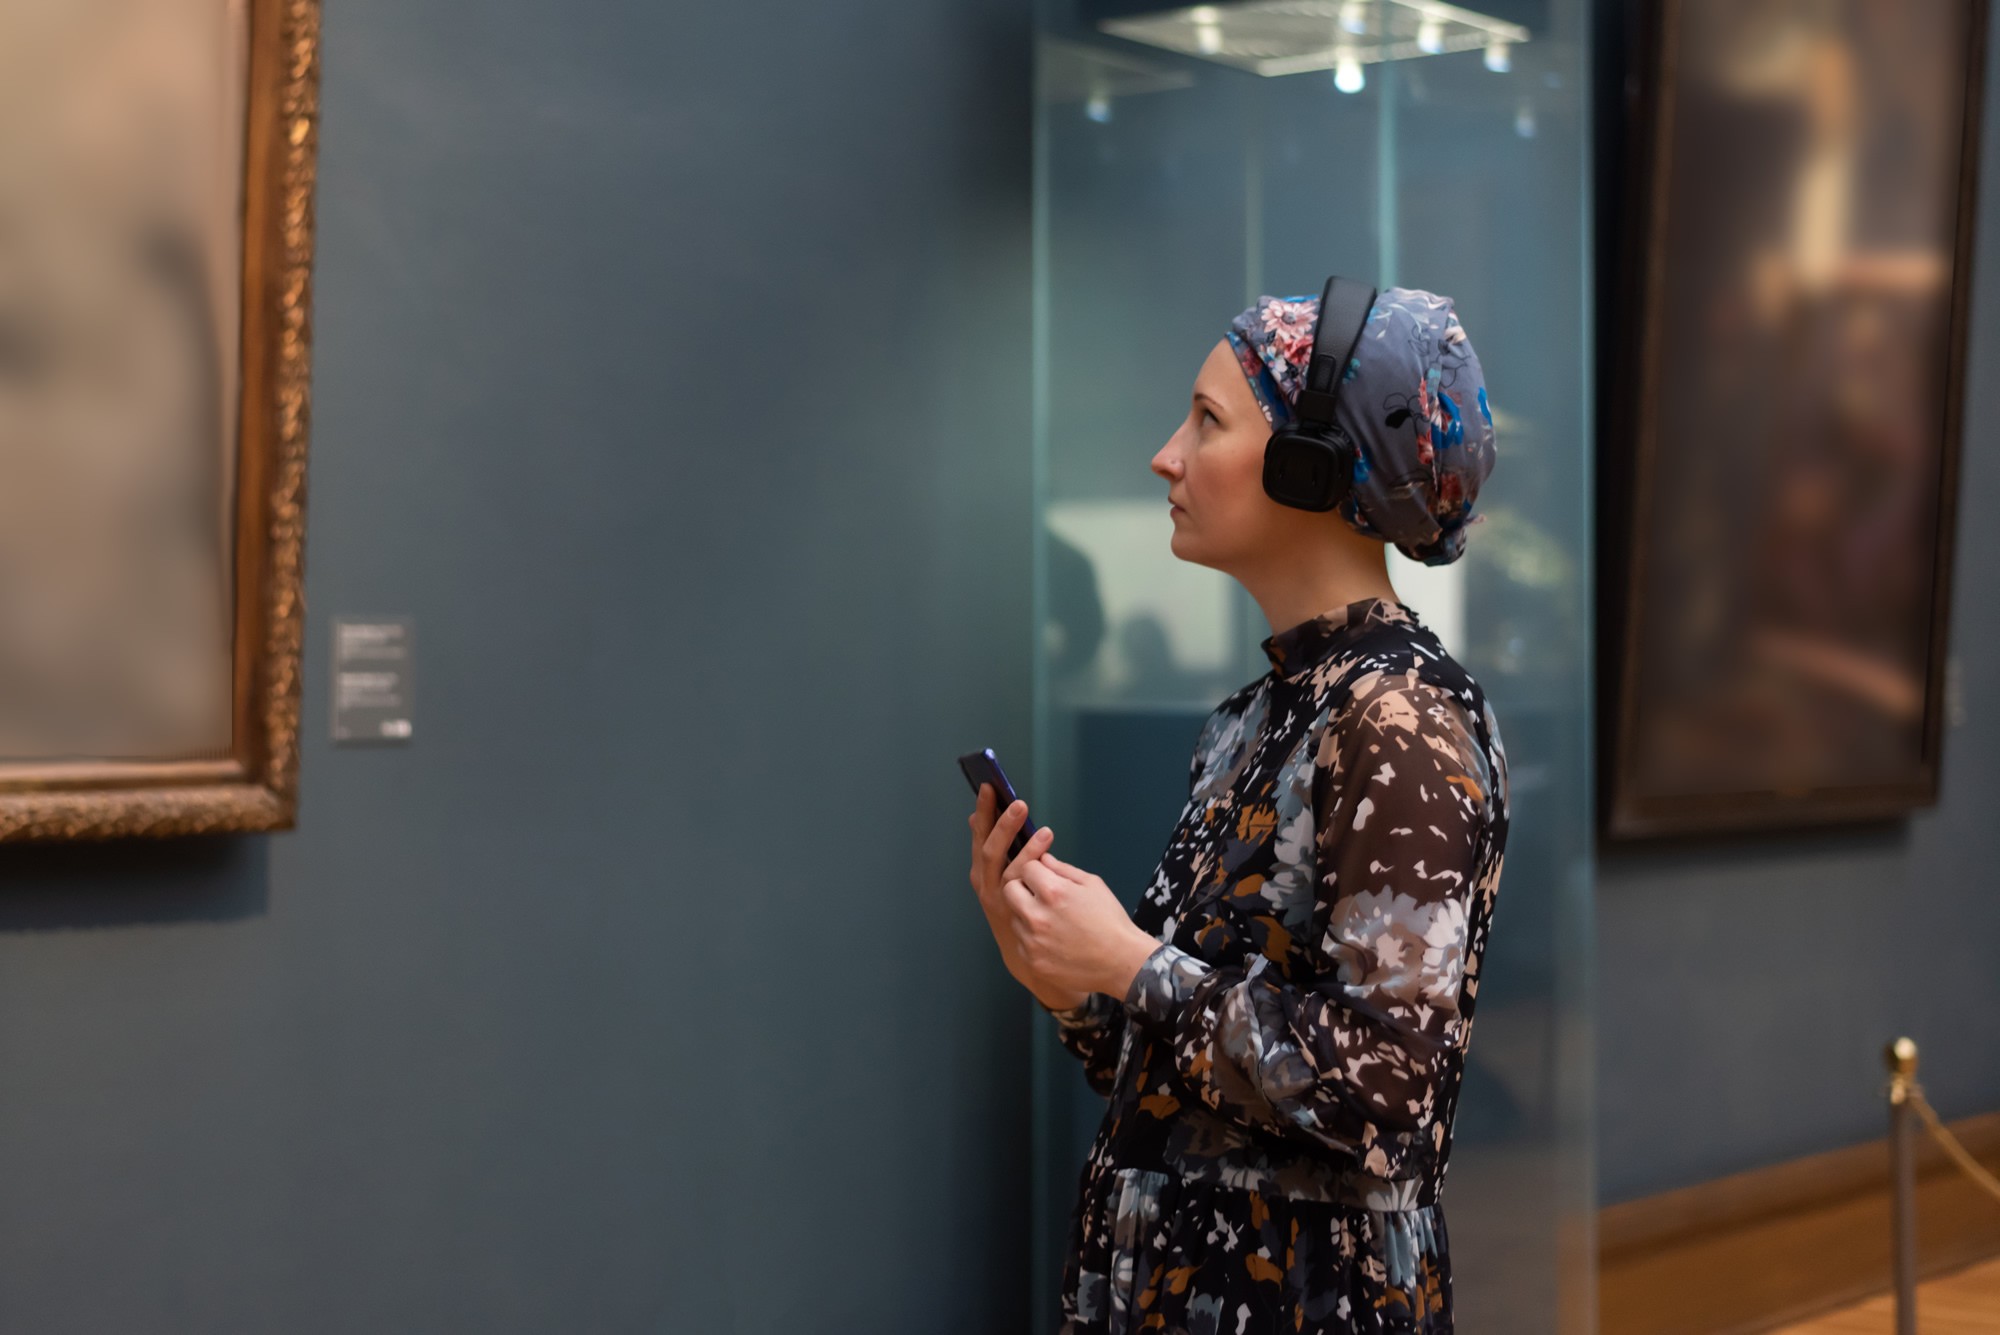 Informieren Sie Besucher digital in Ihrem Museum